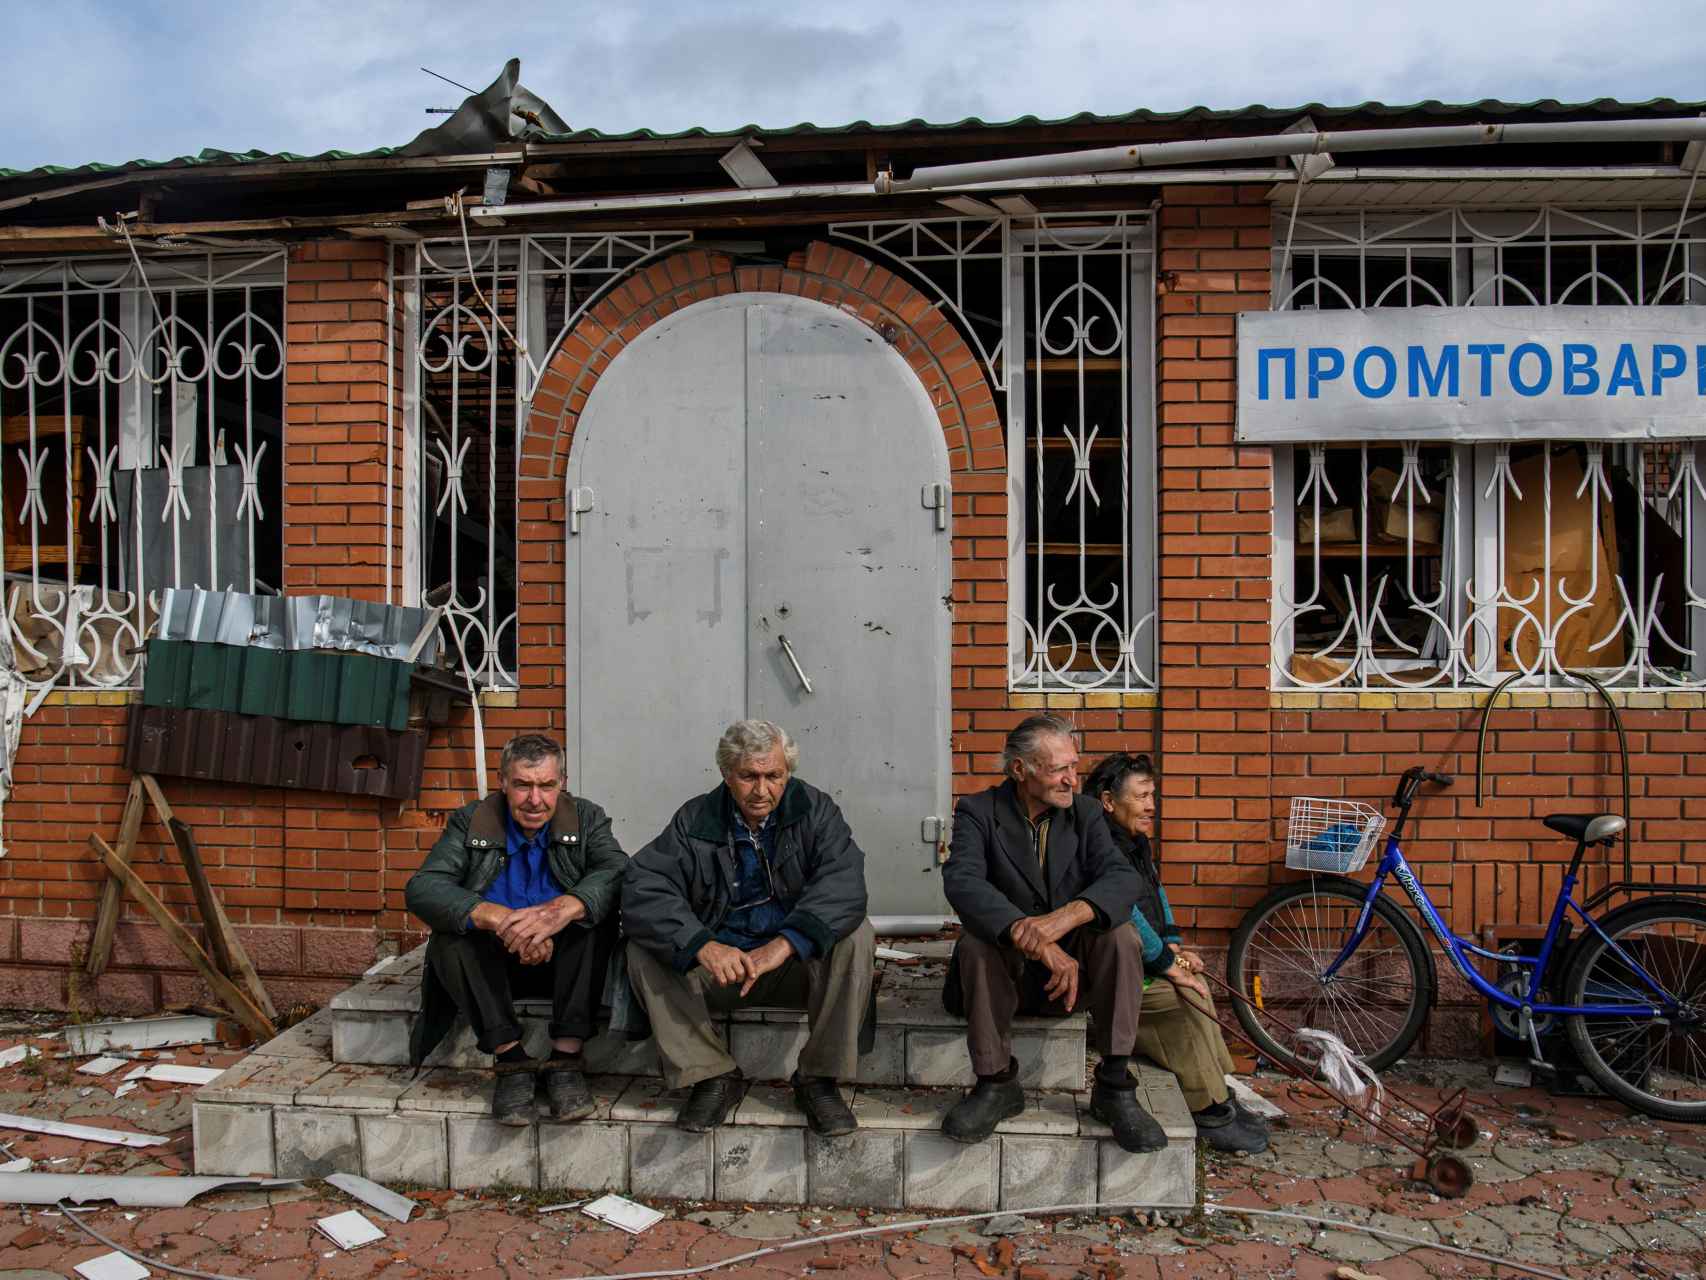 Cuatro personas se reúnen a las puertas de una tienda en el pueblo de Yatskivka, Donetsk..